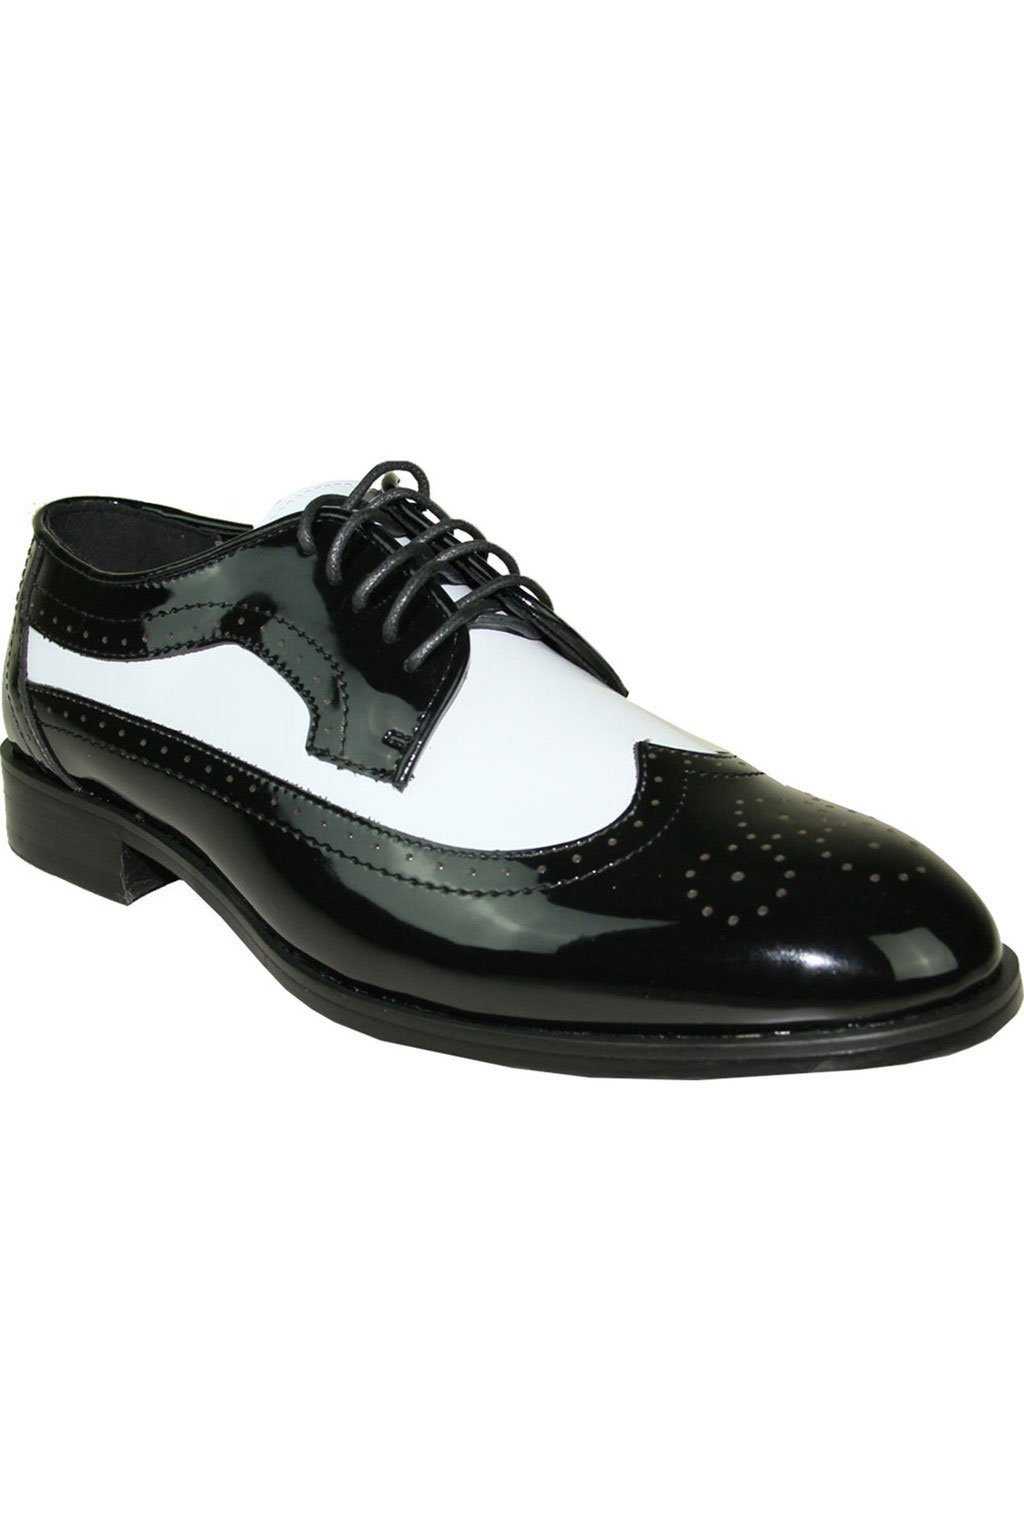 Vangelo "Telford" Black and White Vangelo Tuxedo Shoes